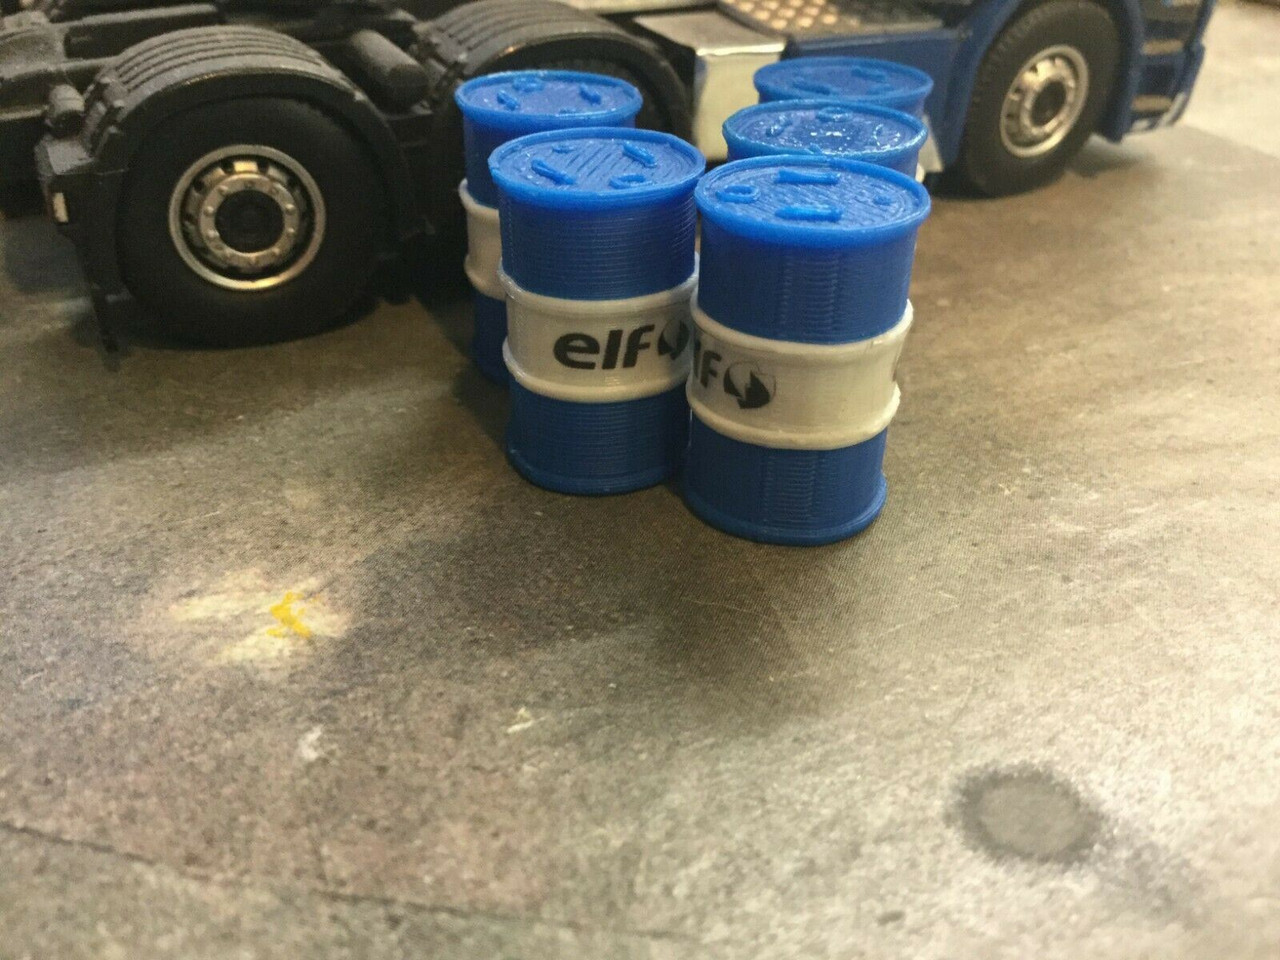 1/43 Scale Blue & White Oil Barrel elf x 6.